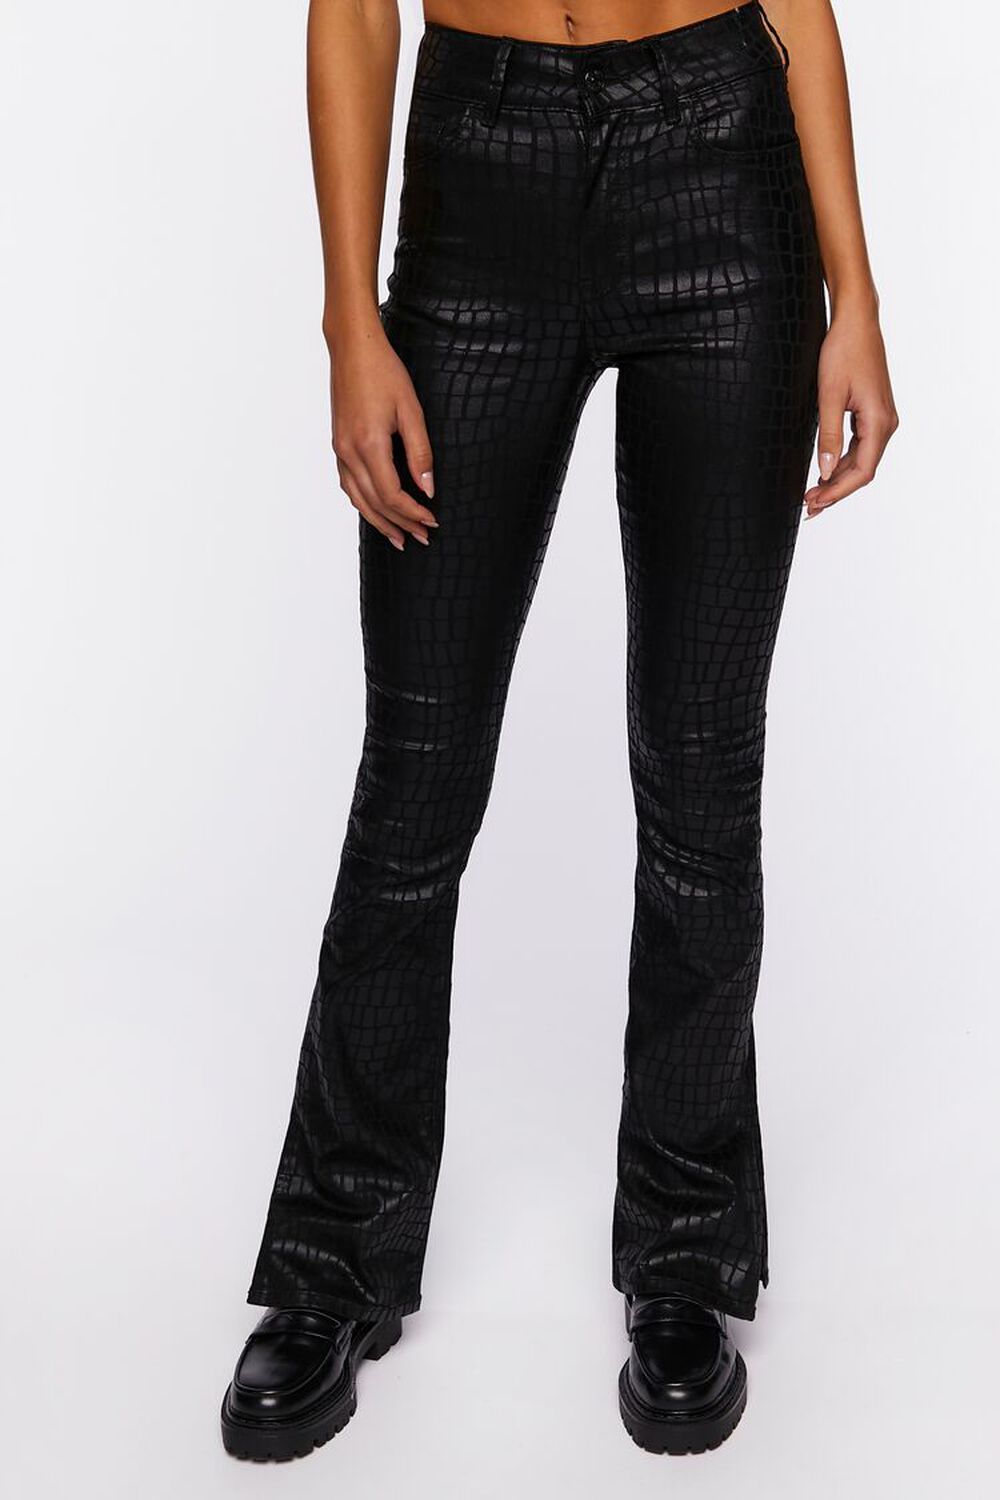 BLACK Faux Croc Split-Hem Jeans, image 1